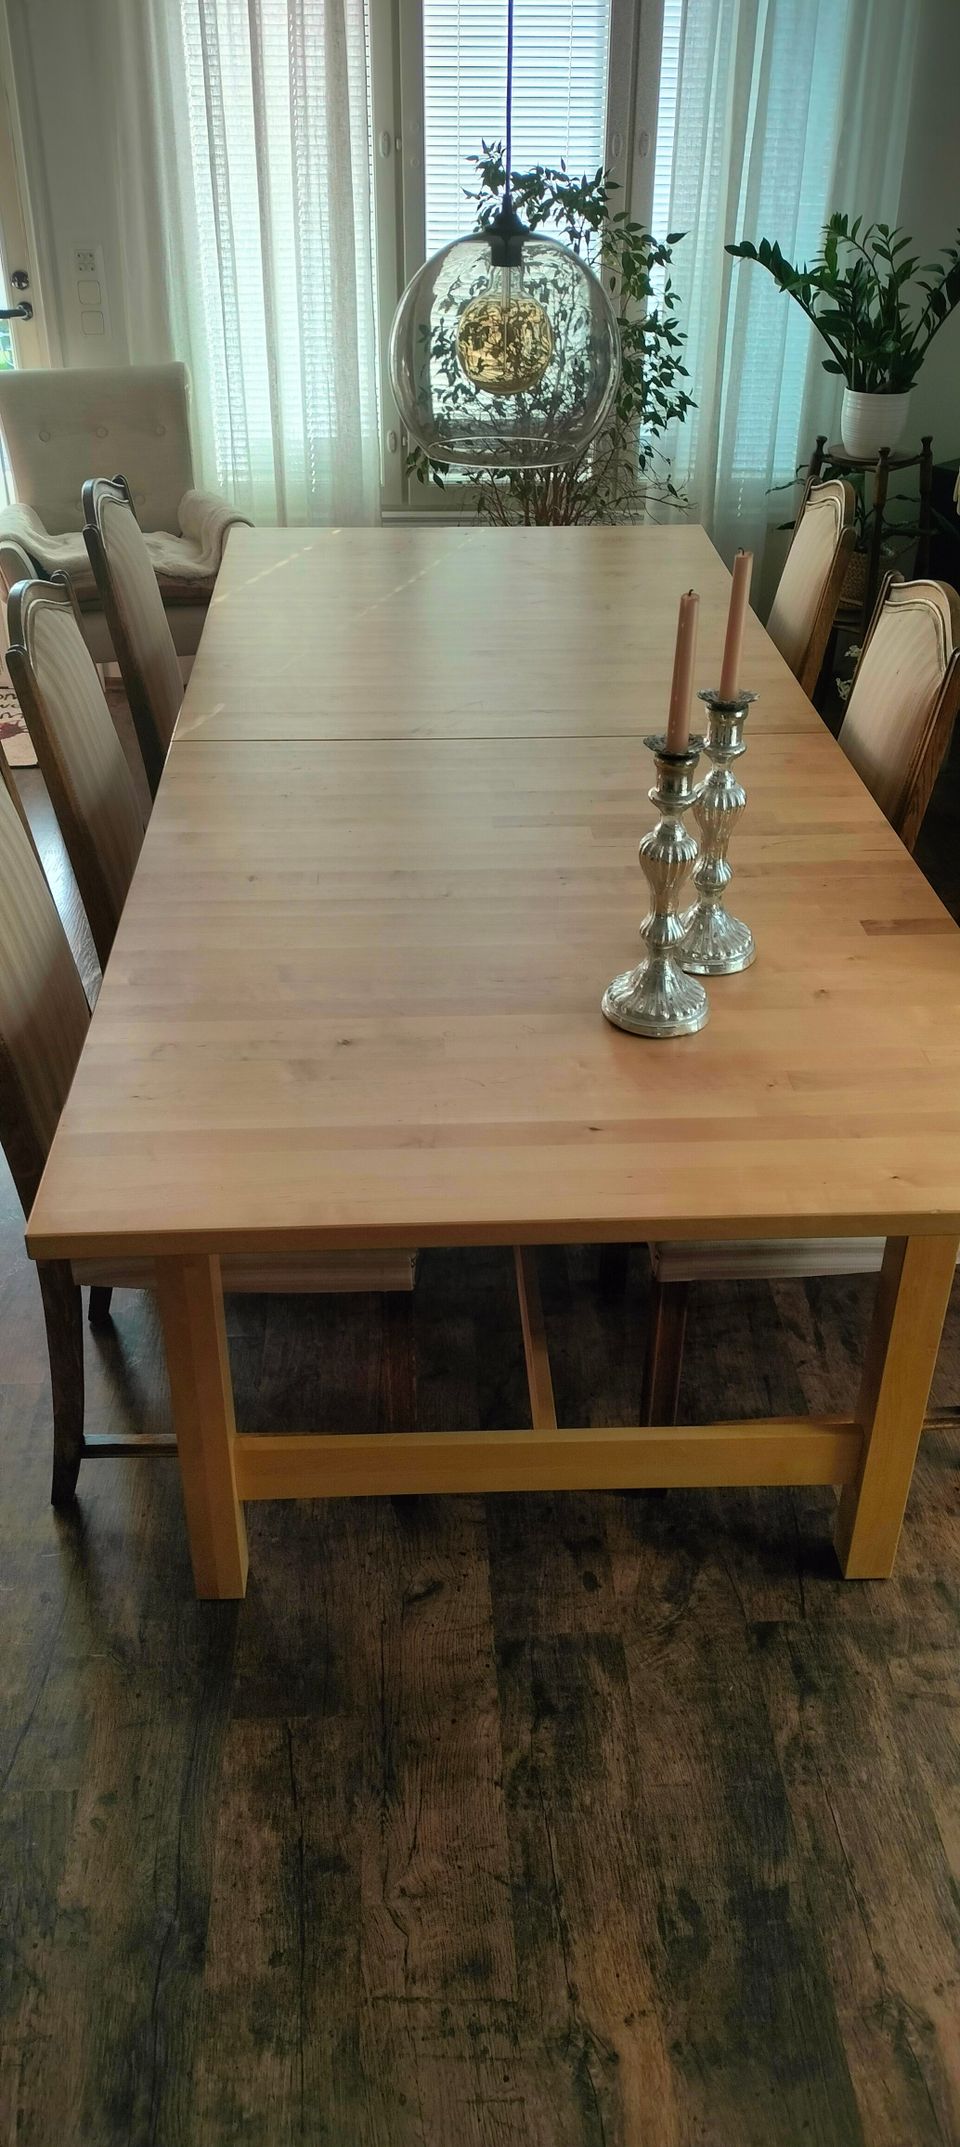 Pöytä ja 6 tuolia